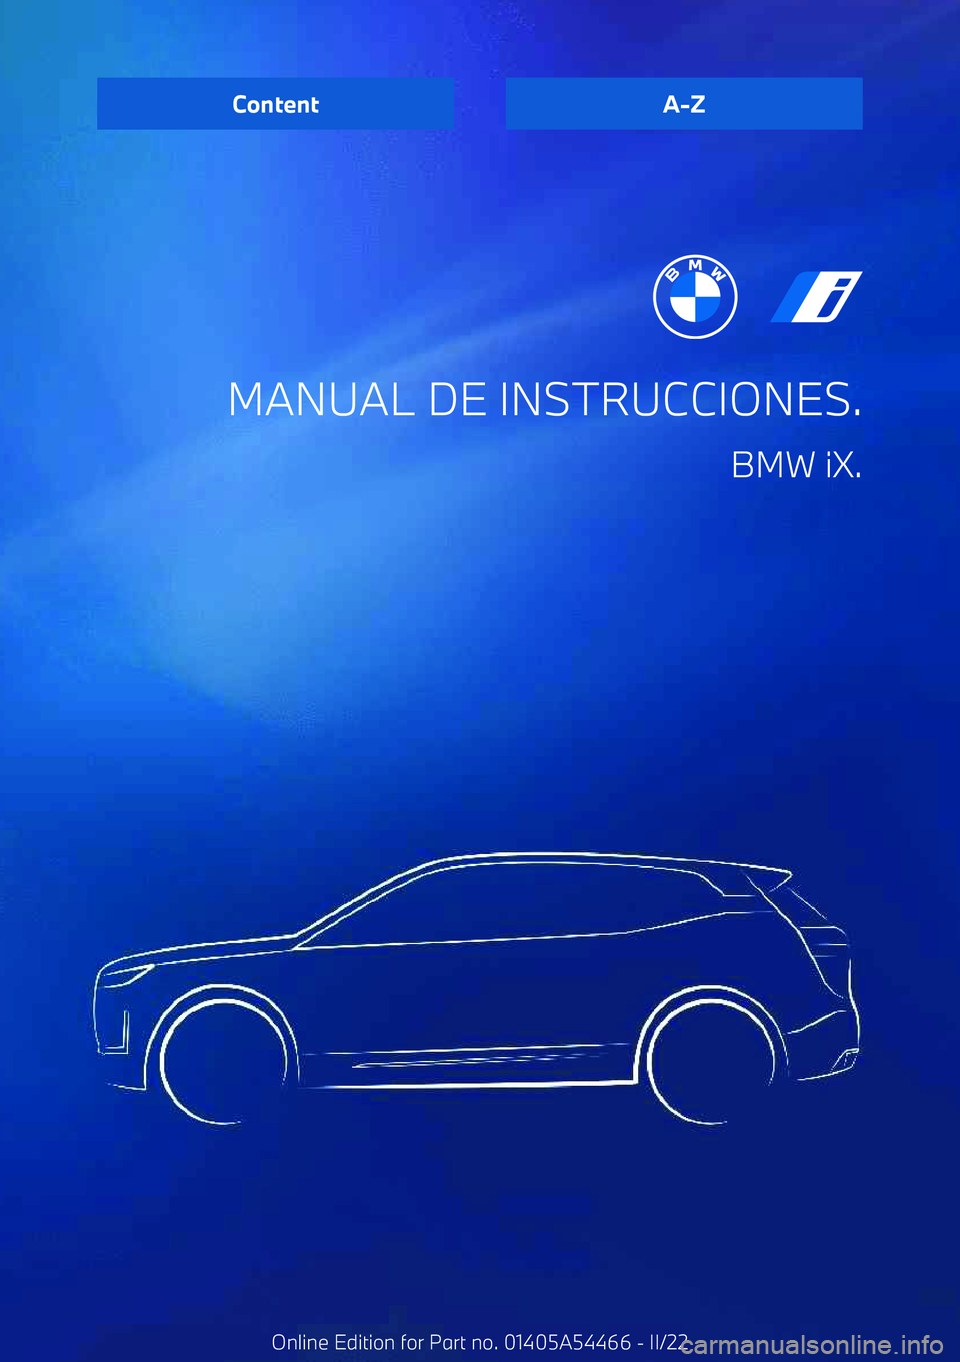 BMW IX 2022  Manuales de Empleo (in Spanish) MANUAL DE INSTRUCCIONES.BMW iX.ContentA